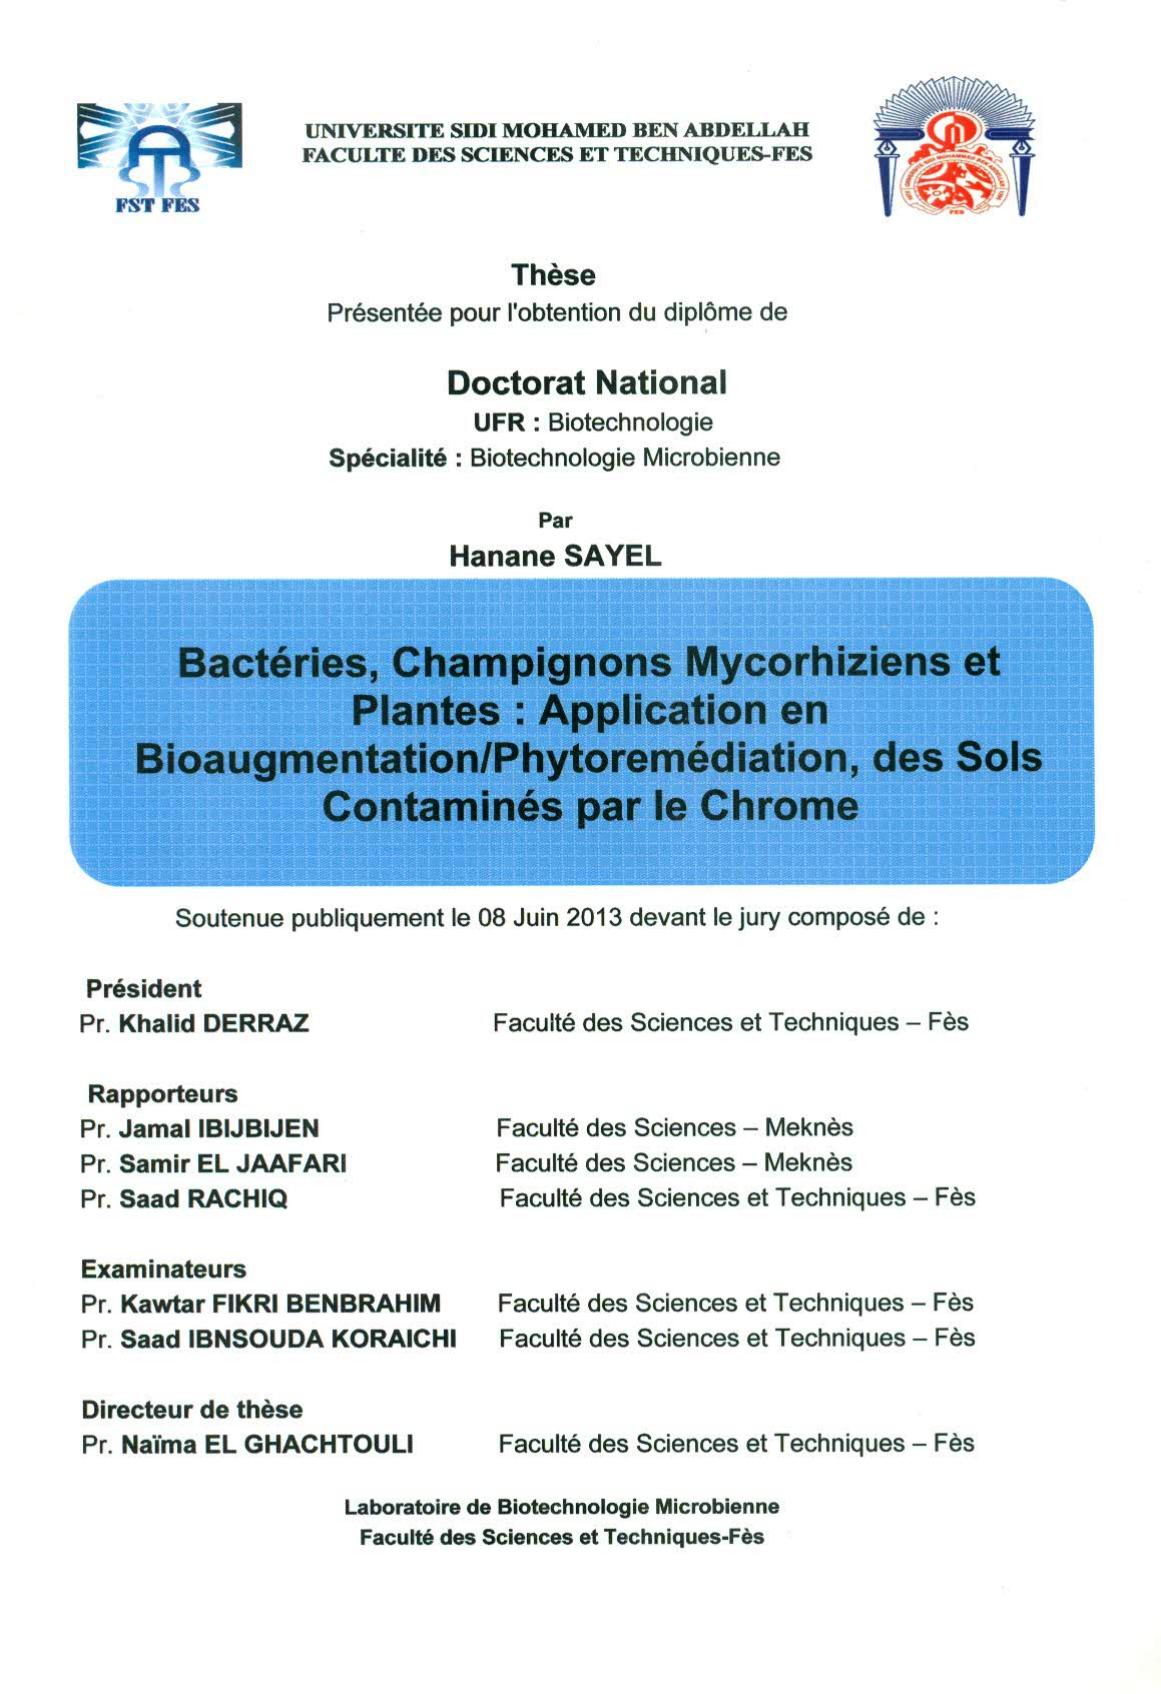 Bactéries, Champignons Mycorhiziens et Plantes: Application en Bioaugmentation/ Phytoremédiation, des Sols Contaminés par le Chrome